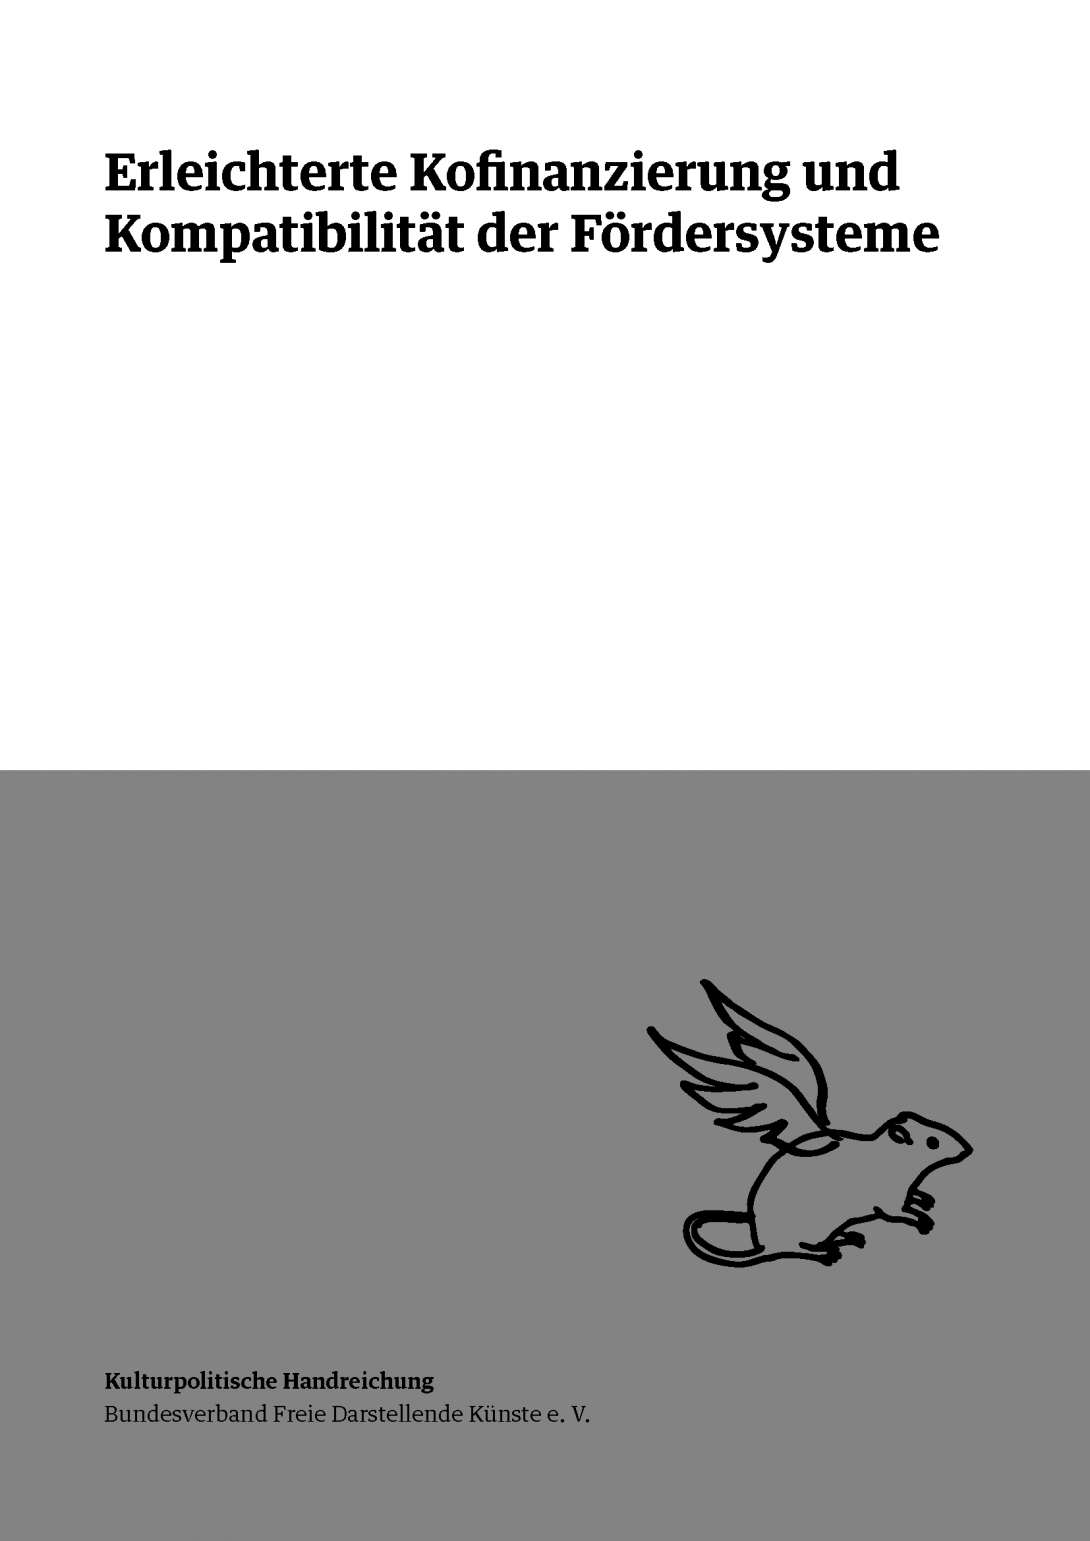 Titelbild BFDK-Handreichung Kofinanzierung und Foerdersysteme